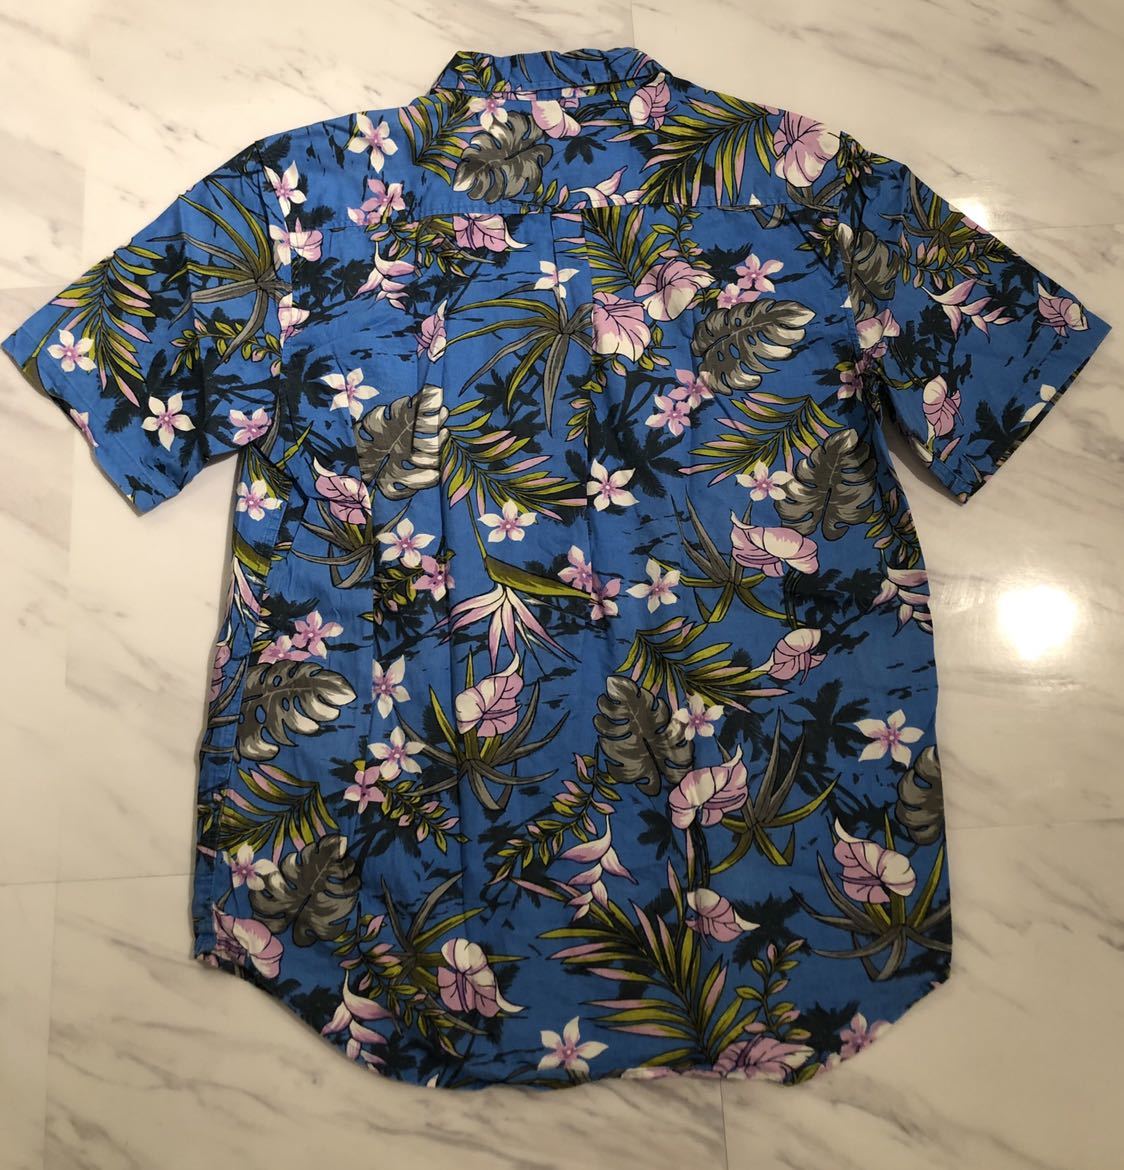  прекрасный товар редкий STUSSY old цветочный принт короткий рукав гавайская рубашка L голубой Stussy первый период общий рисунок гавайская рубашка очень редкий шедевр 